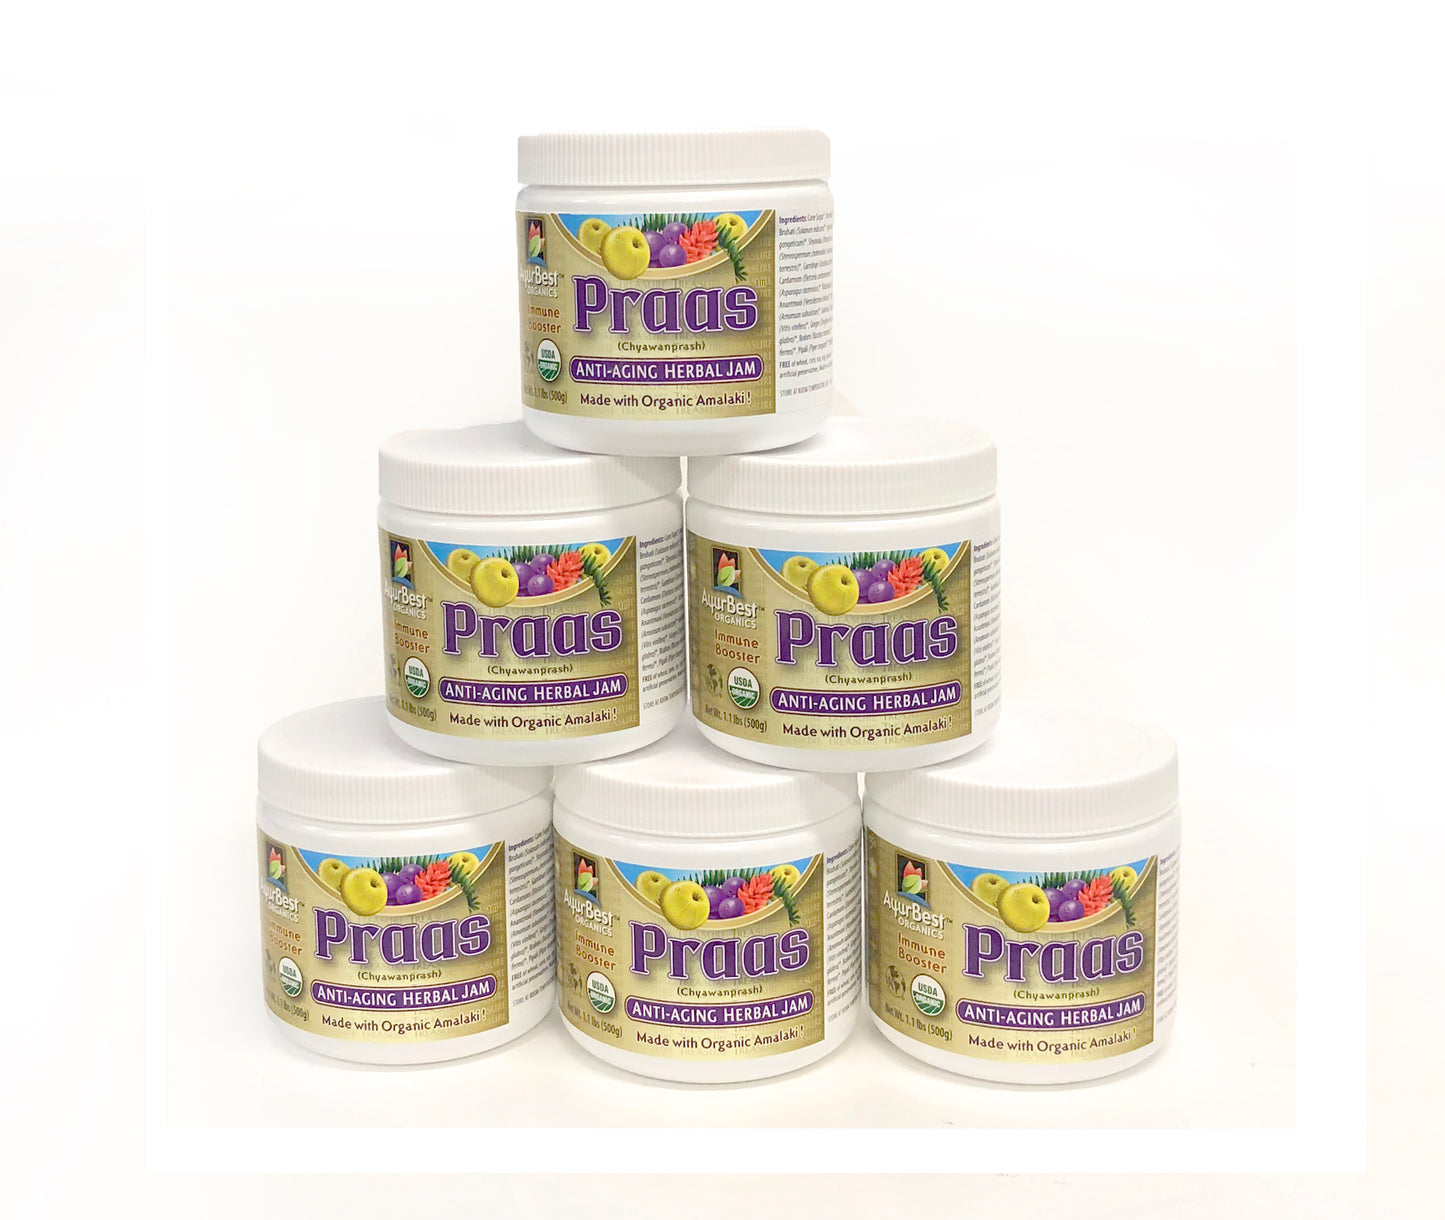 PRAAS - Organic Chyawanprash, 100% USDA Certified Organic Herbal Jam - 1.1lb (500g) Jar - The First Made in the USA